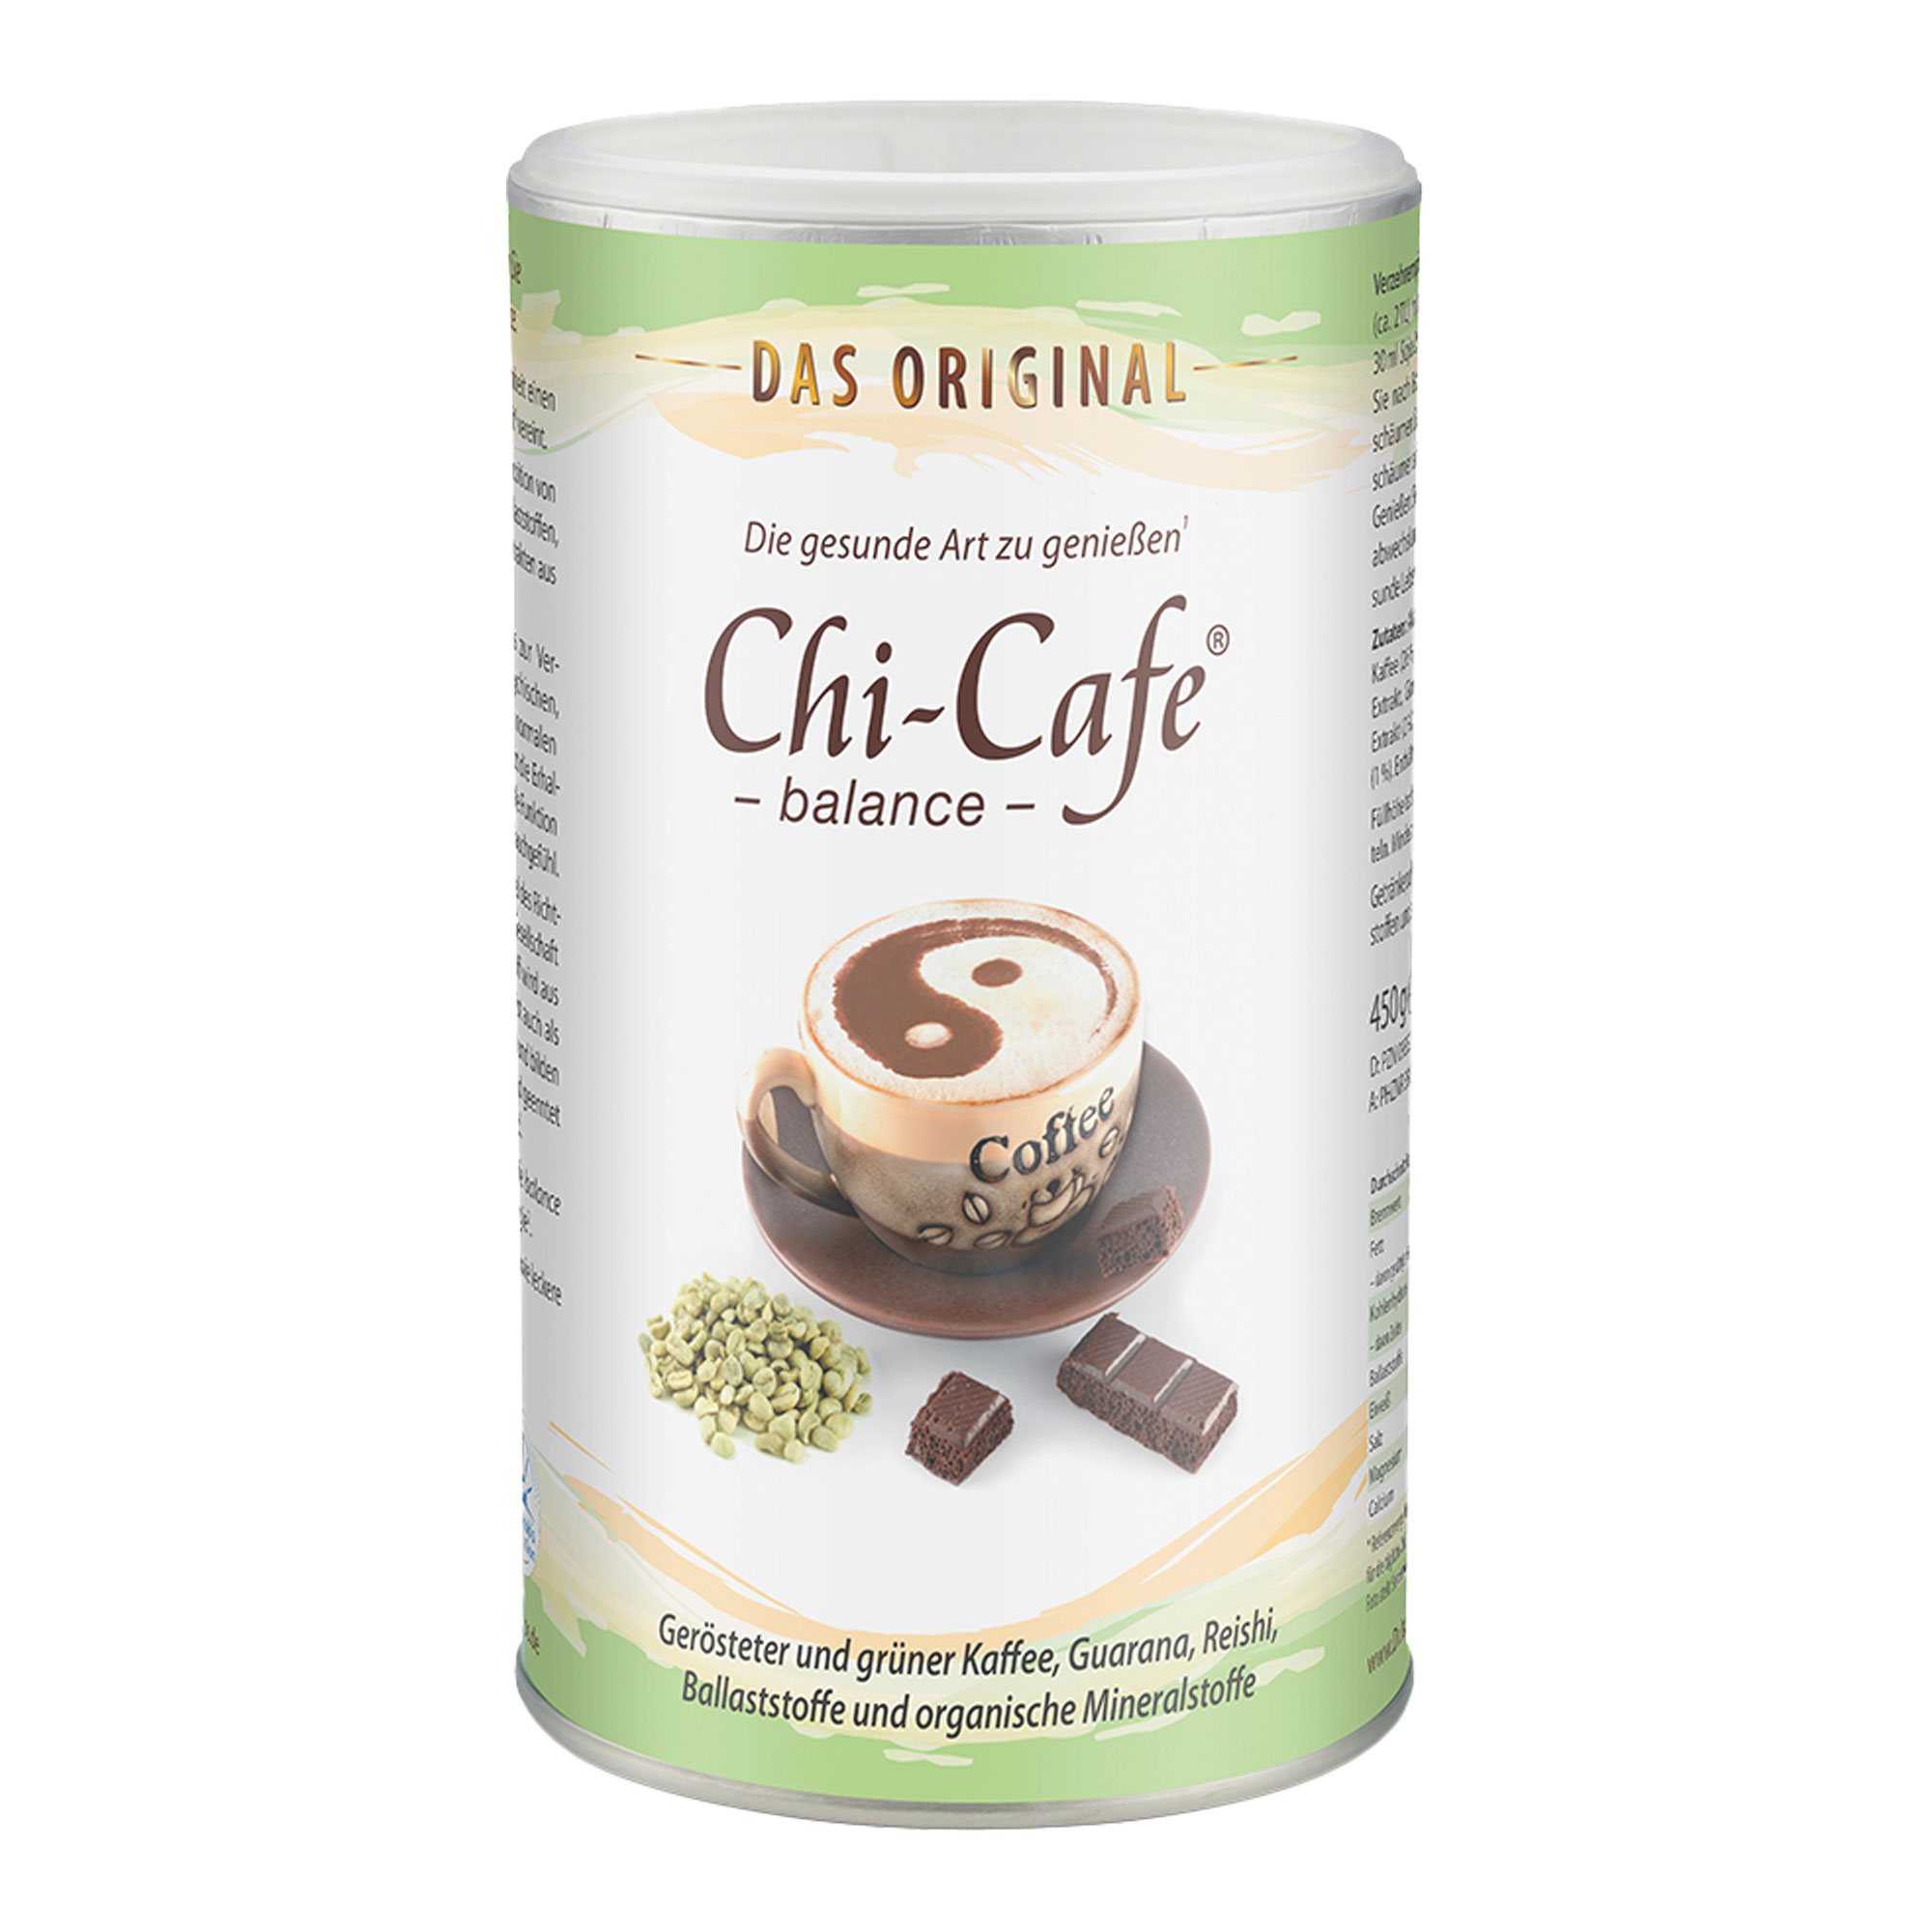 Milde Kaffee-Alternative: Ballaststoffe & Mineralstoffe - mit Koffein aus Kaffee und Guarana.